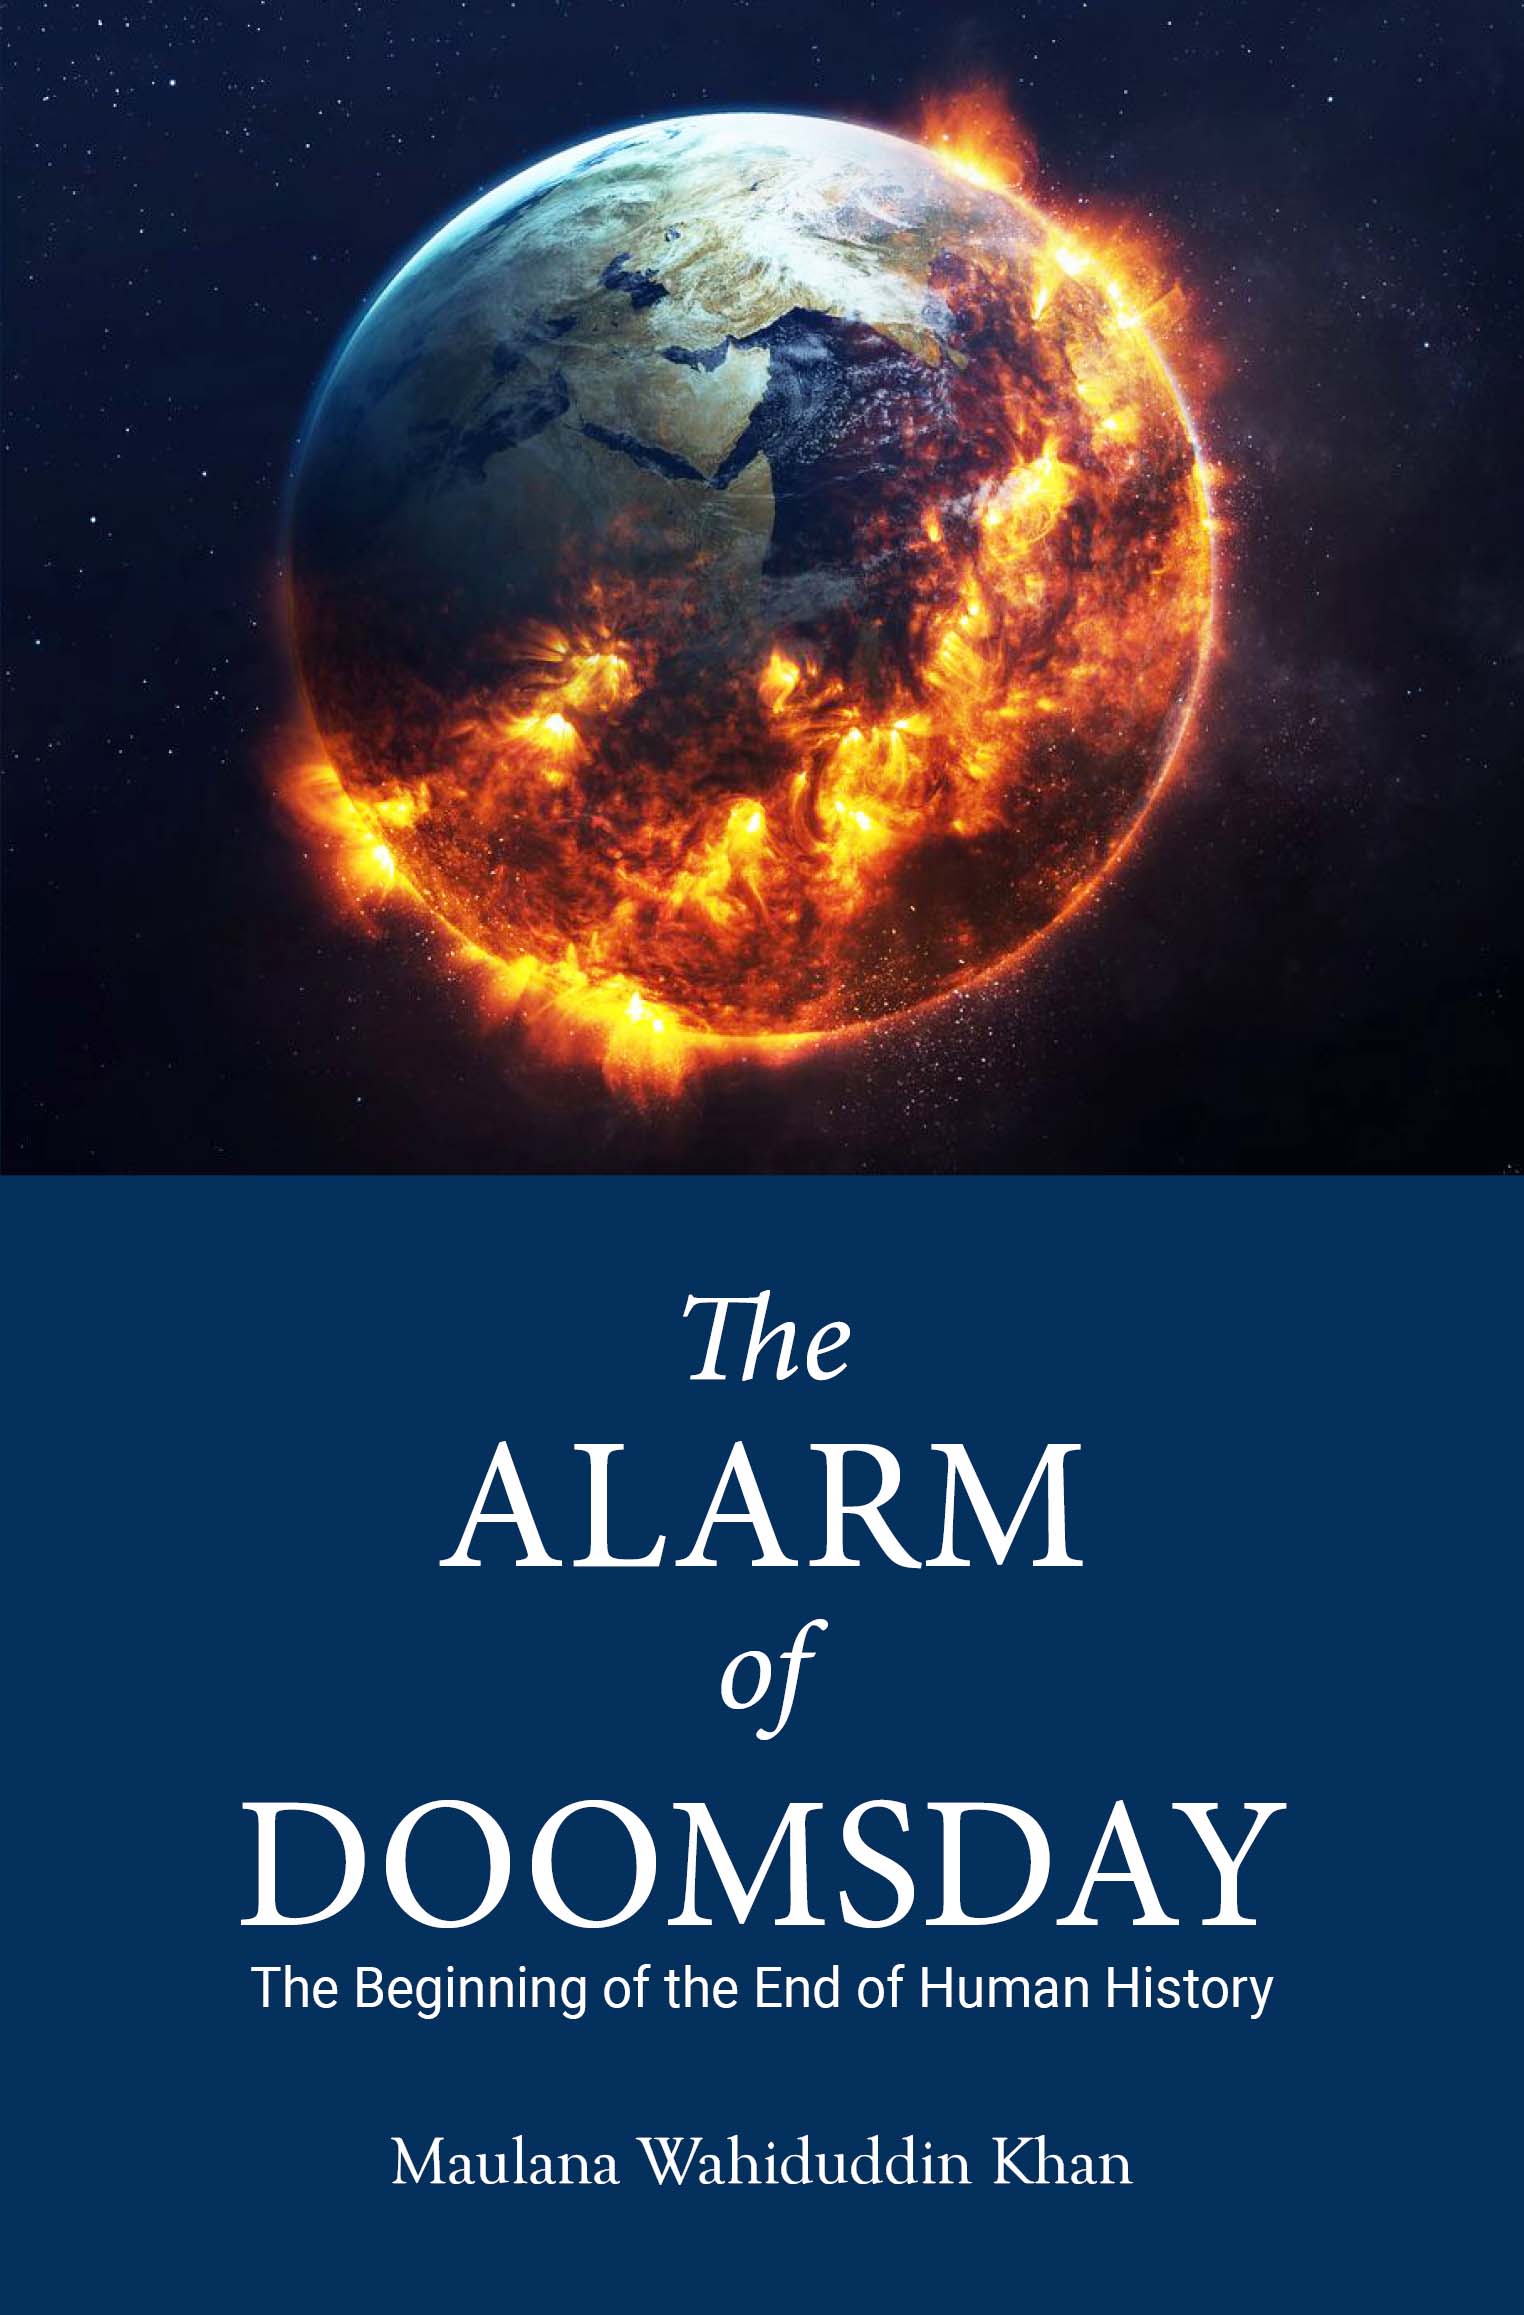 The Alarm of Doomsday